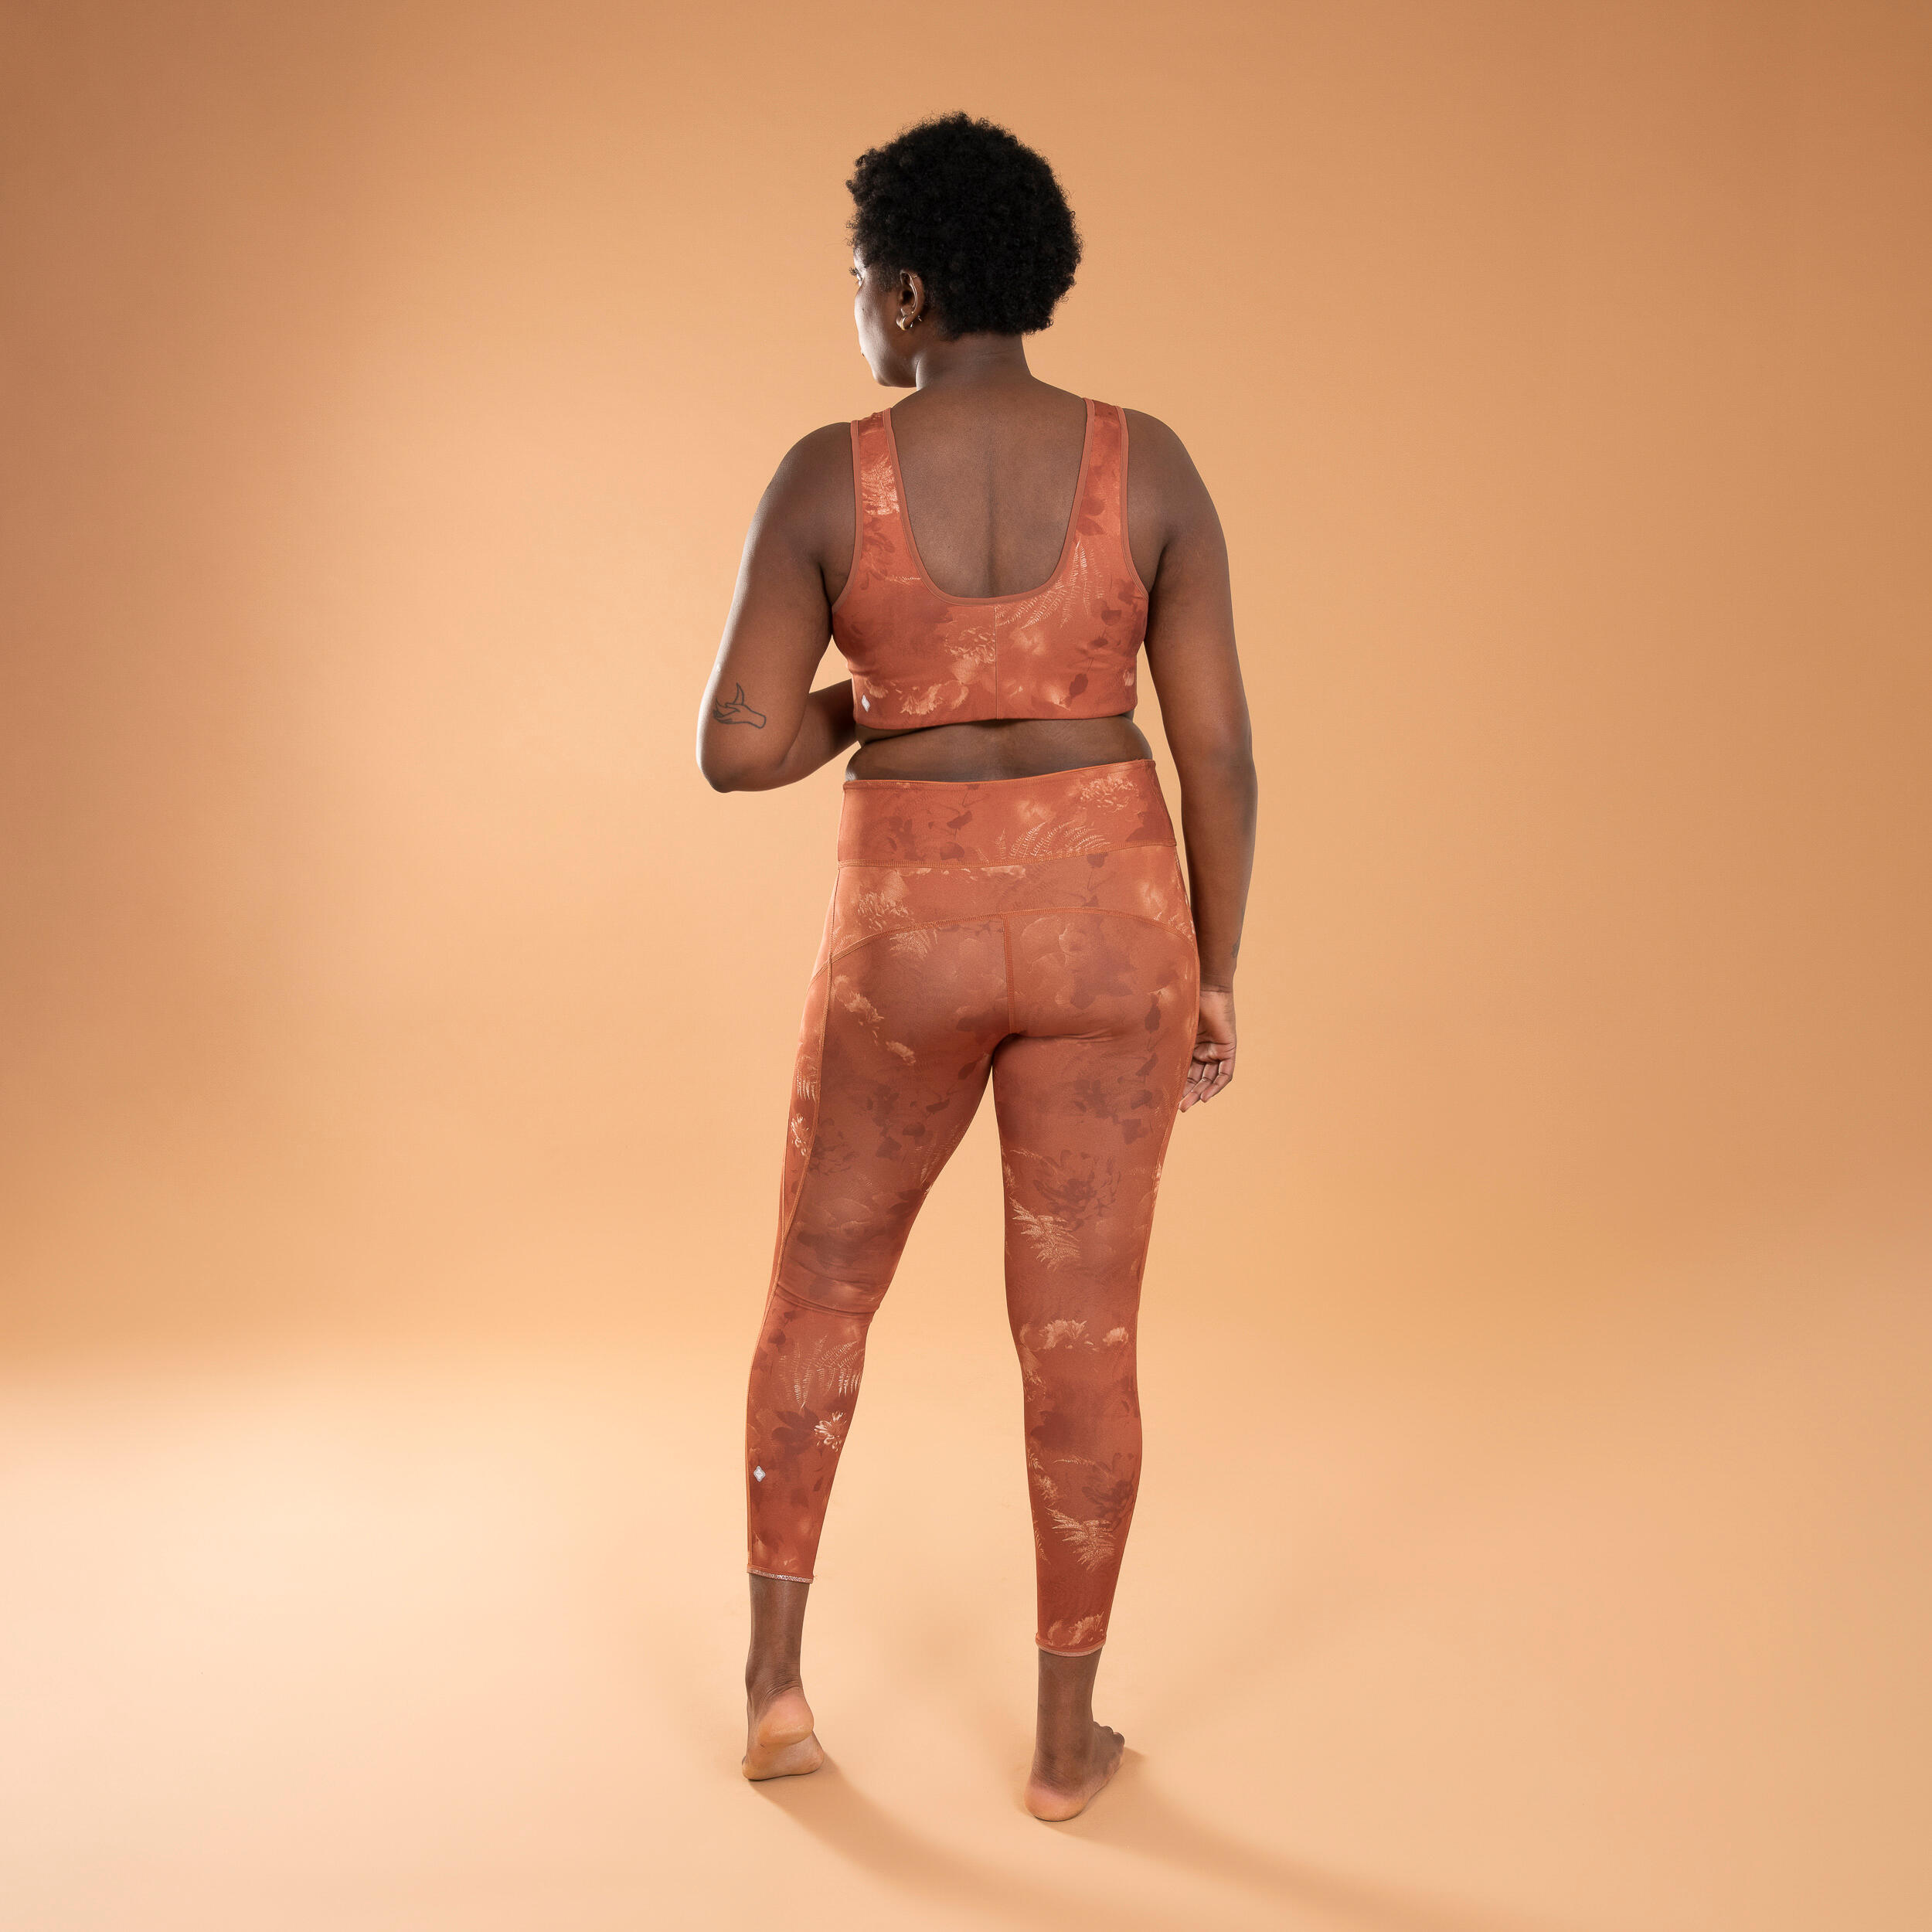 Women's Dynamic Yoga Reversible Leggings - Solid/Print Brown and Orange 4/7